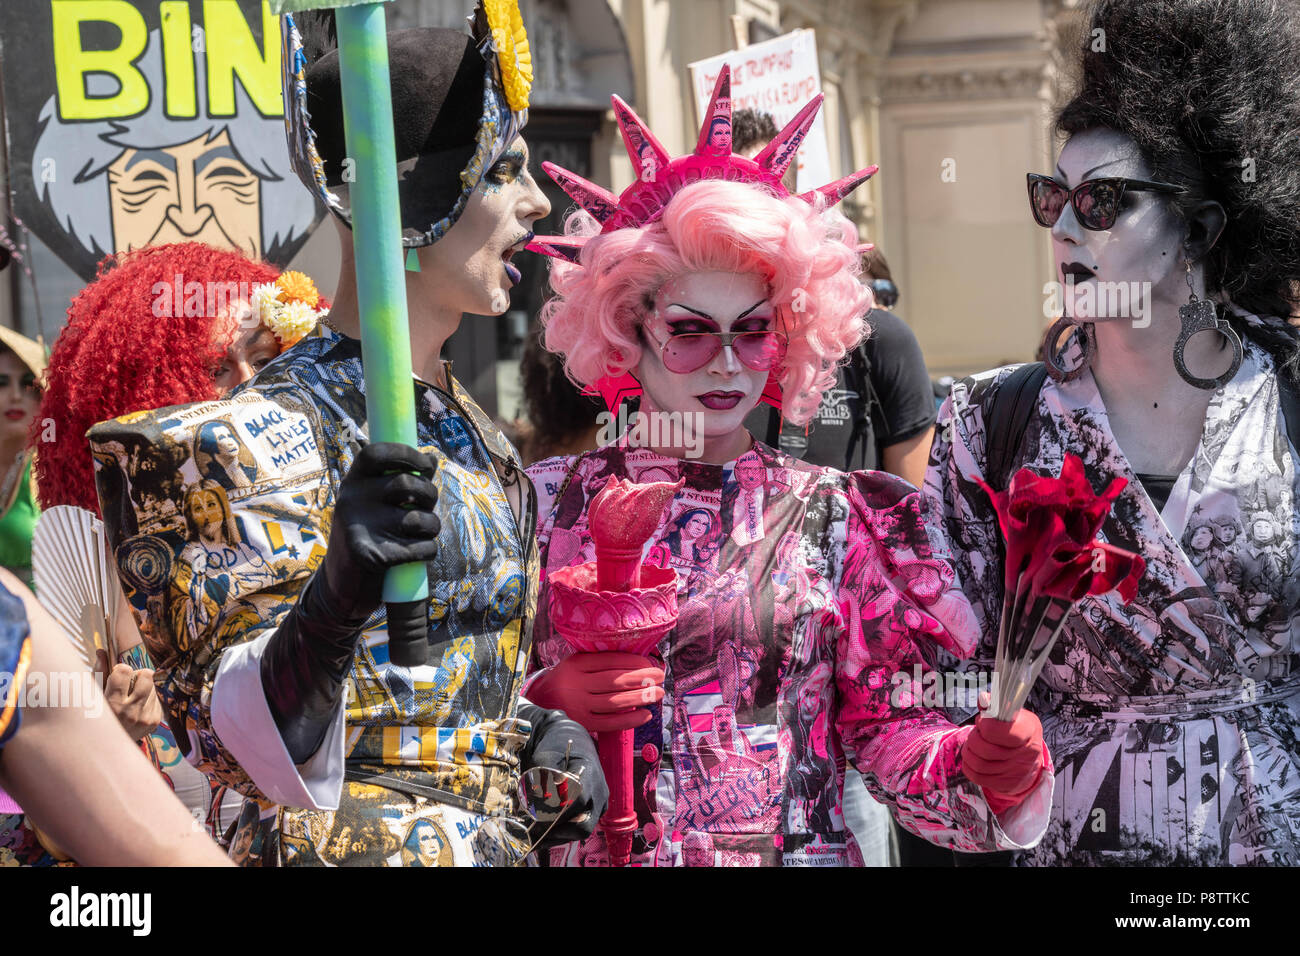 Londres, le 13 Juillet 2018 Mars femme -Mettre l'anti bruit une petite démonstration d'atout de drag queens mars rejoint le crédit parade Ian Davidson/Alamy Live News Banque D'Images